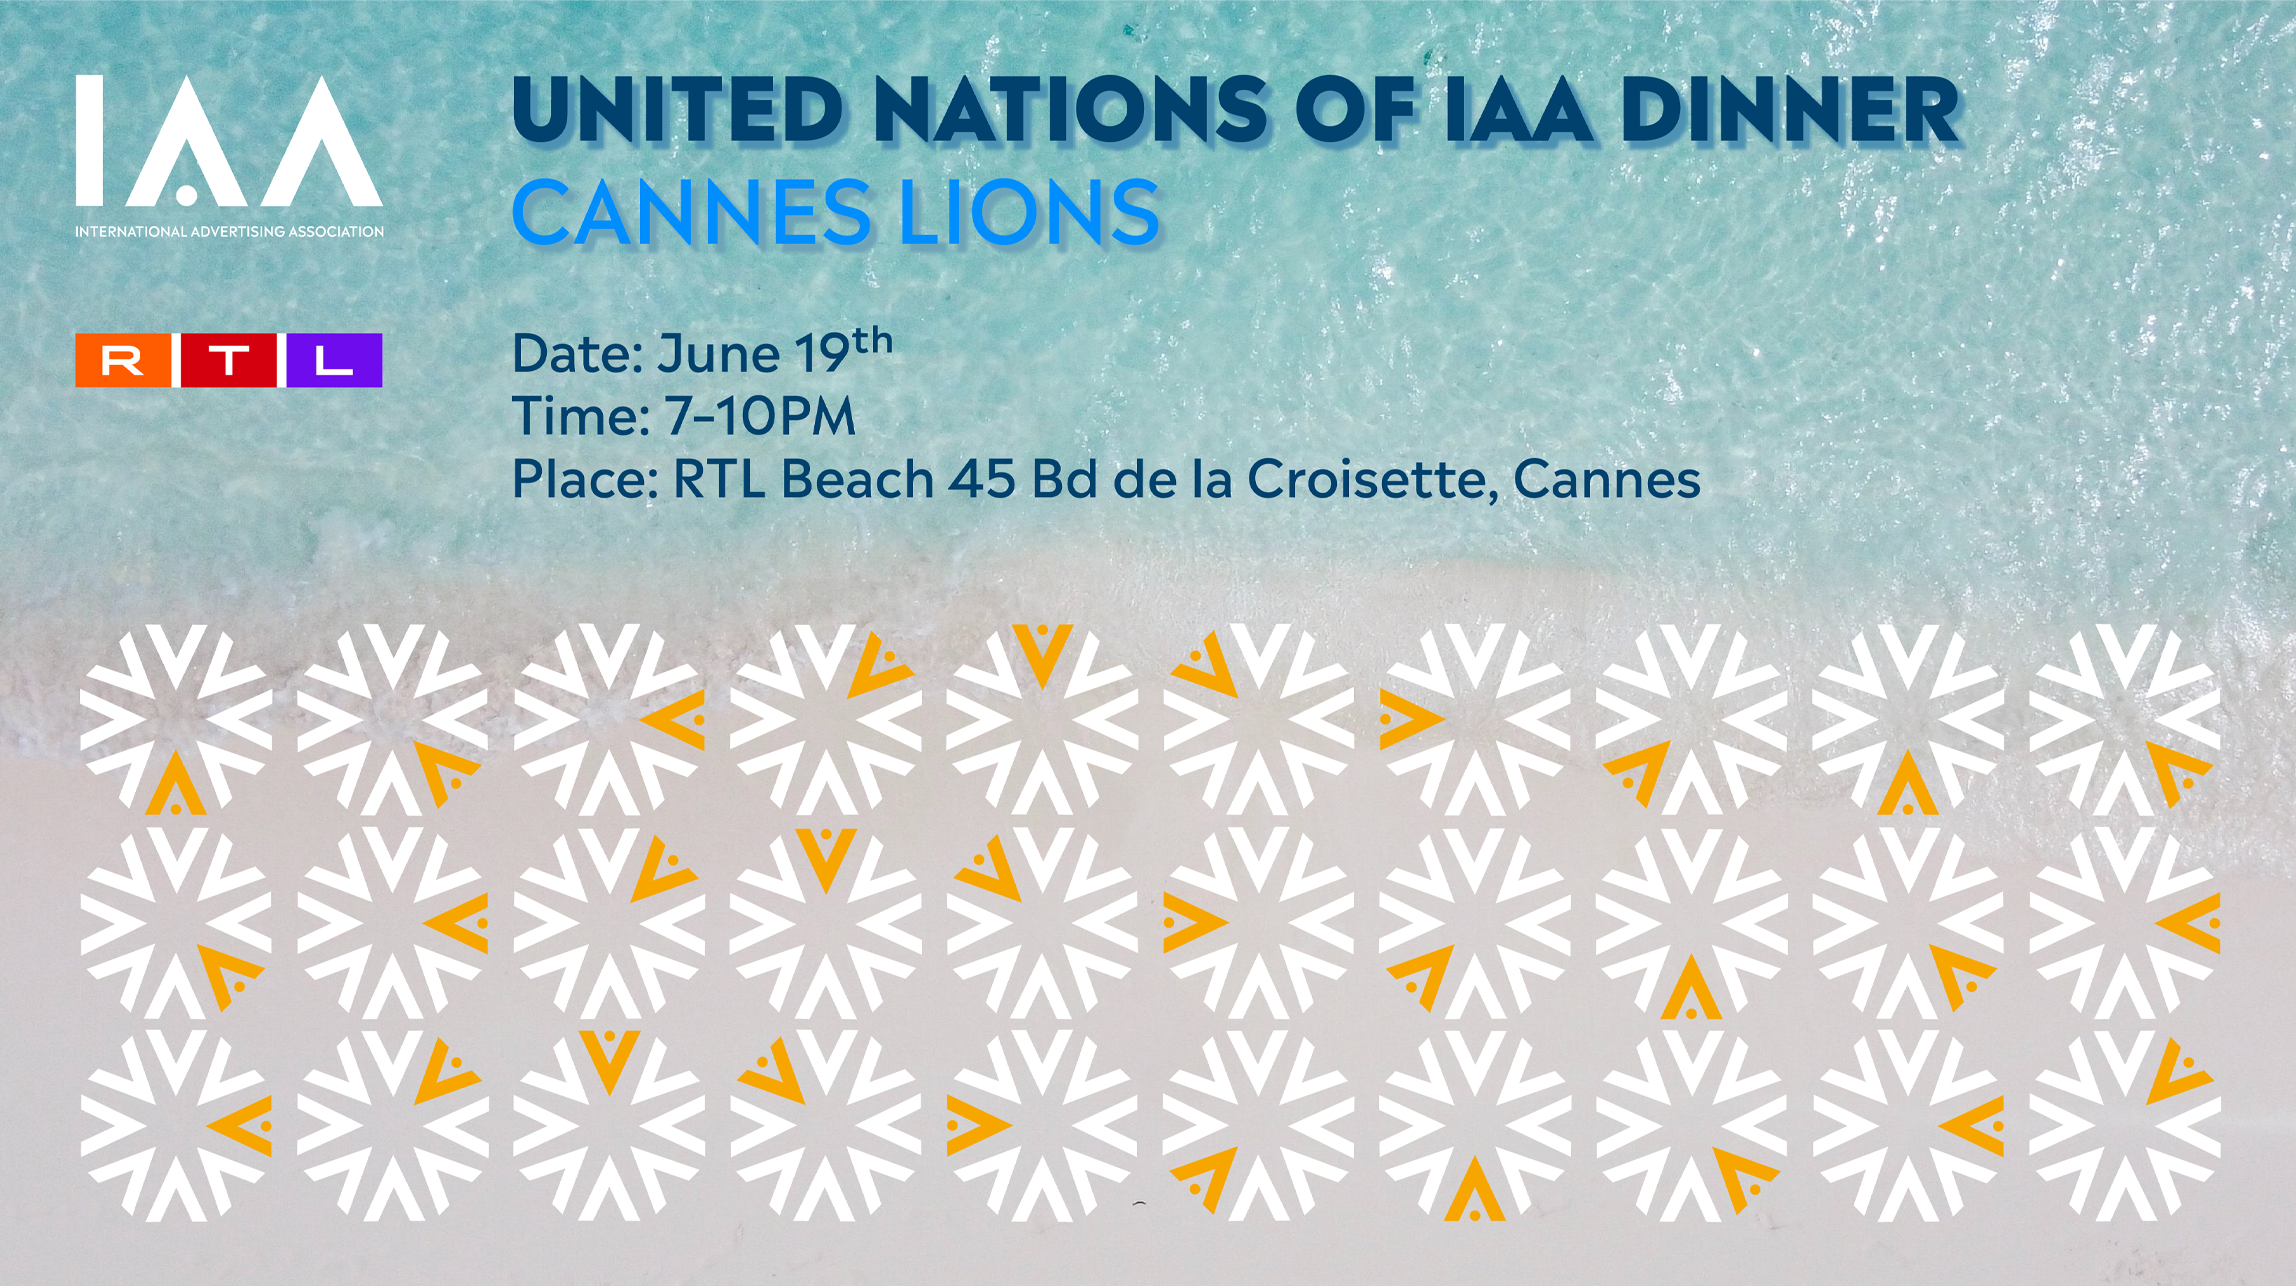 UNITED NATIONS OF IAA GALA DINNER